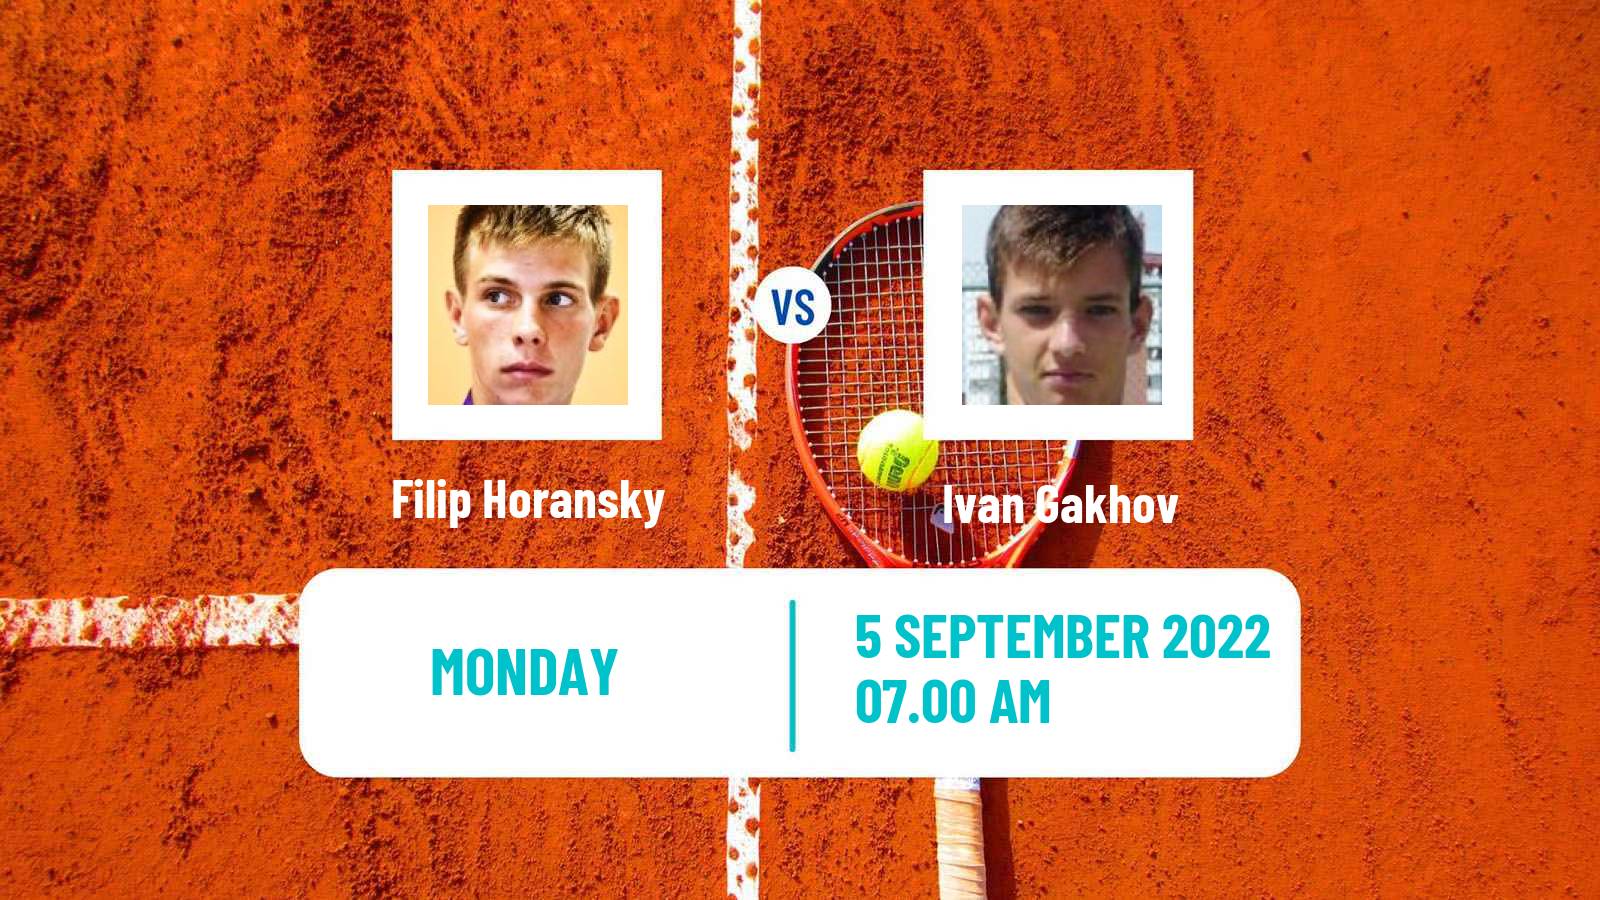 Tennis ATP Challenger Filip Horansky - Ivan Gakhov